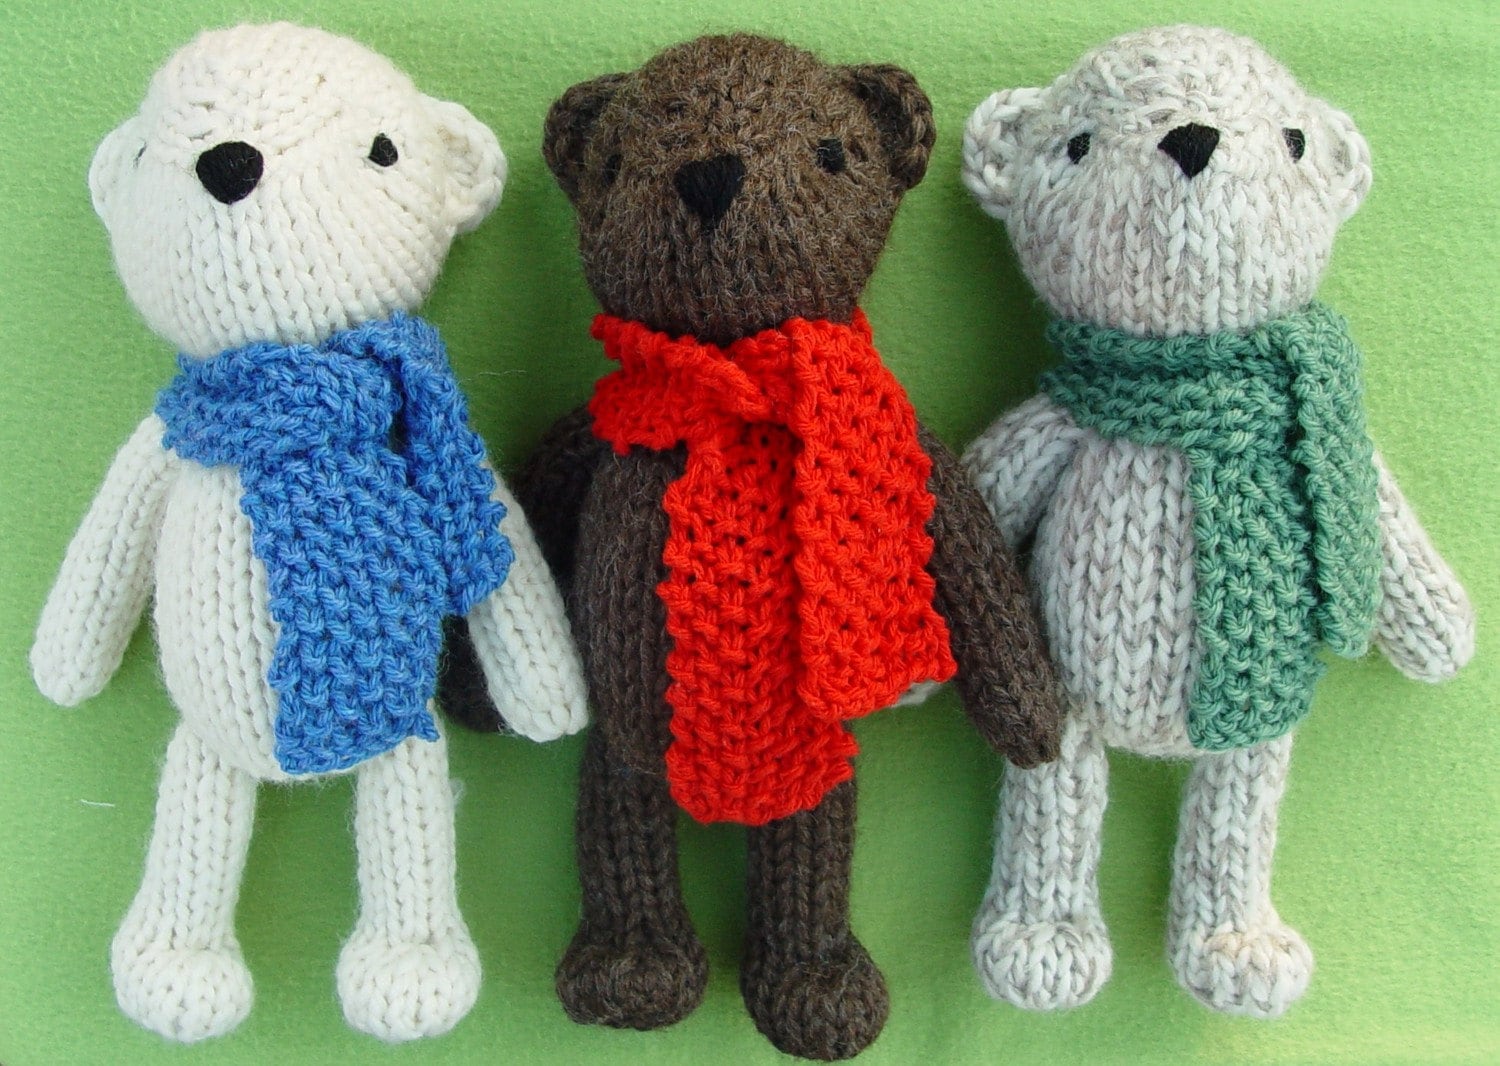 Theodore the Teddy Bear knitting pattern PDF by Yarnigans ...